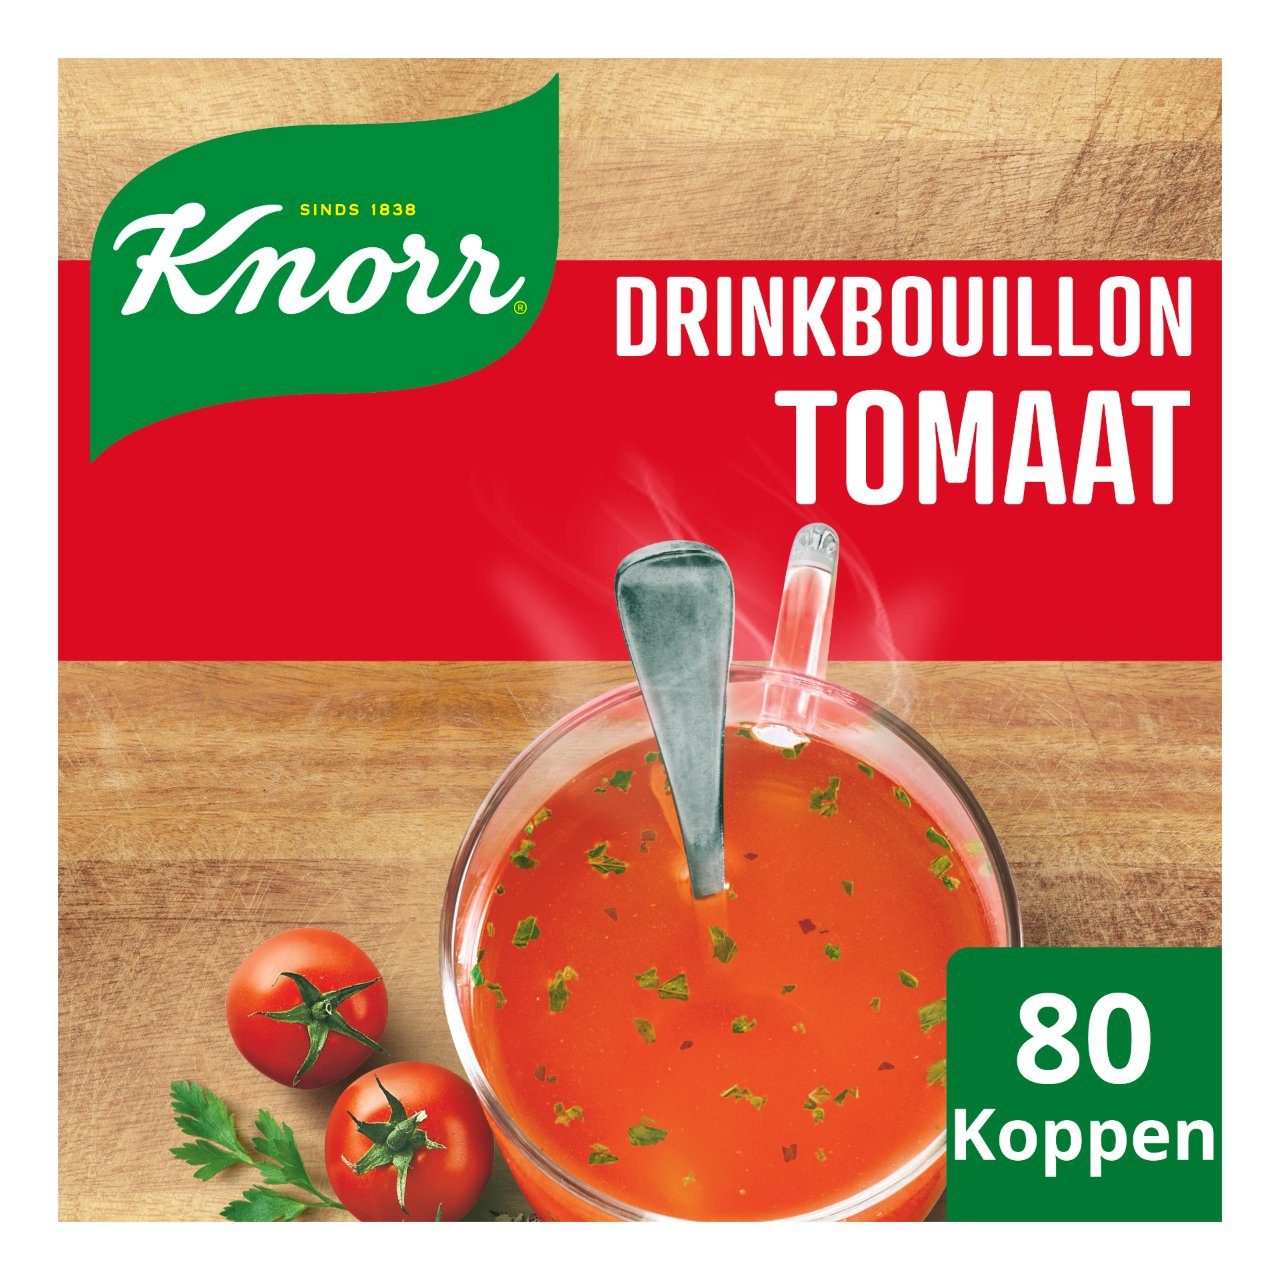 Drinkbouillon tomaat, vegetarisch